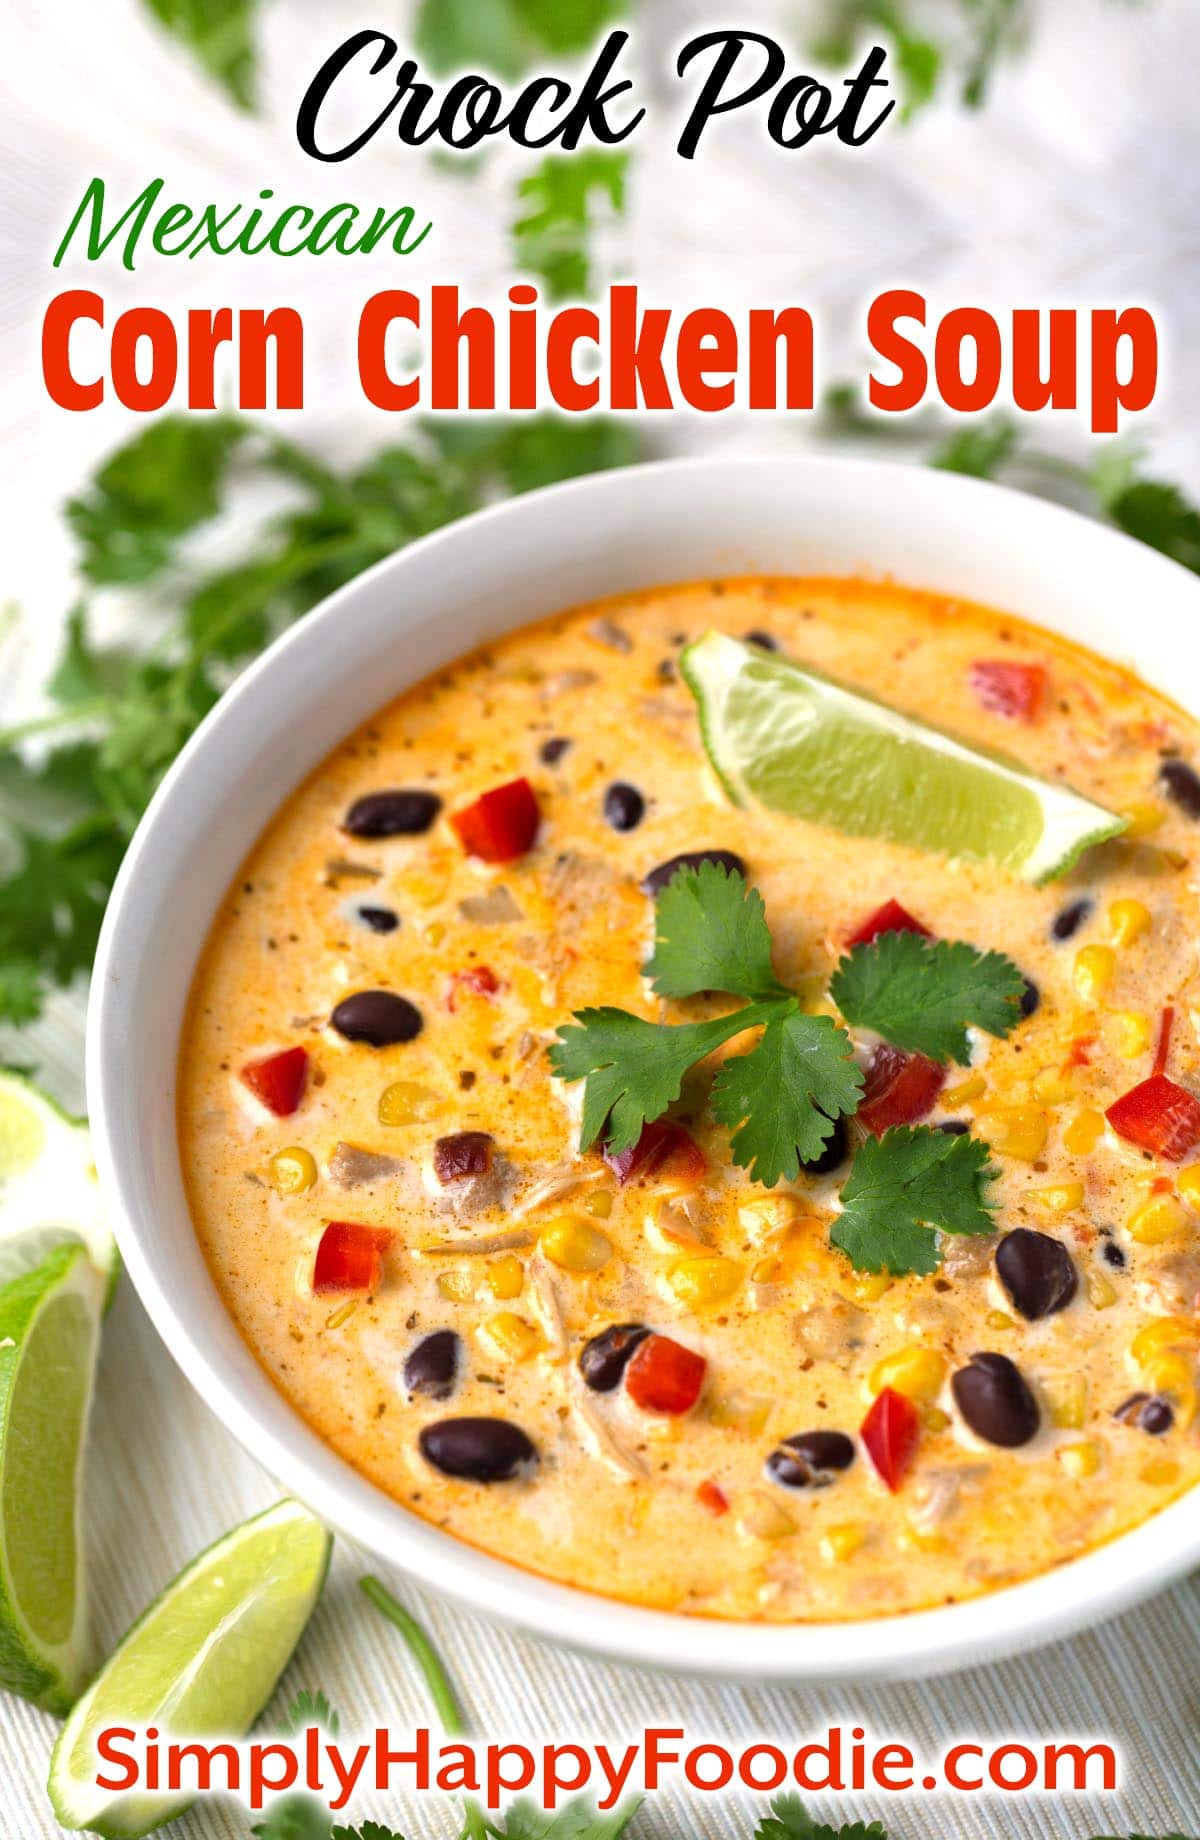 Crock Pot Mexican Corn Chicken Soup - Simply Happy Foodie